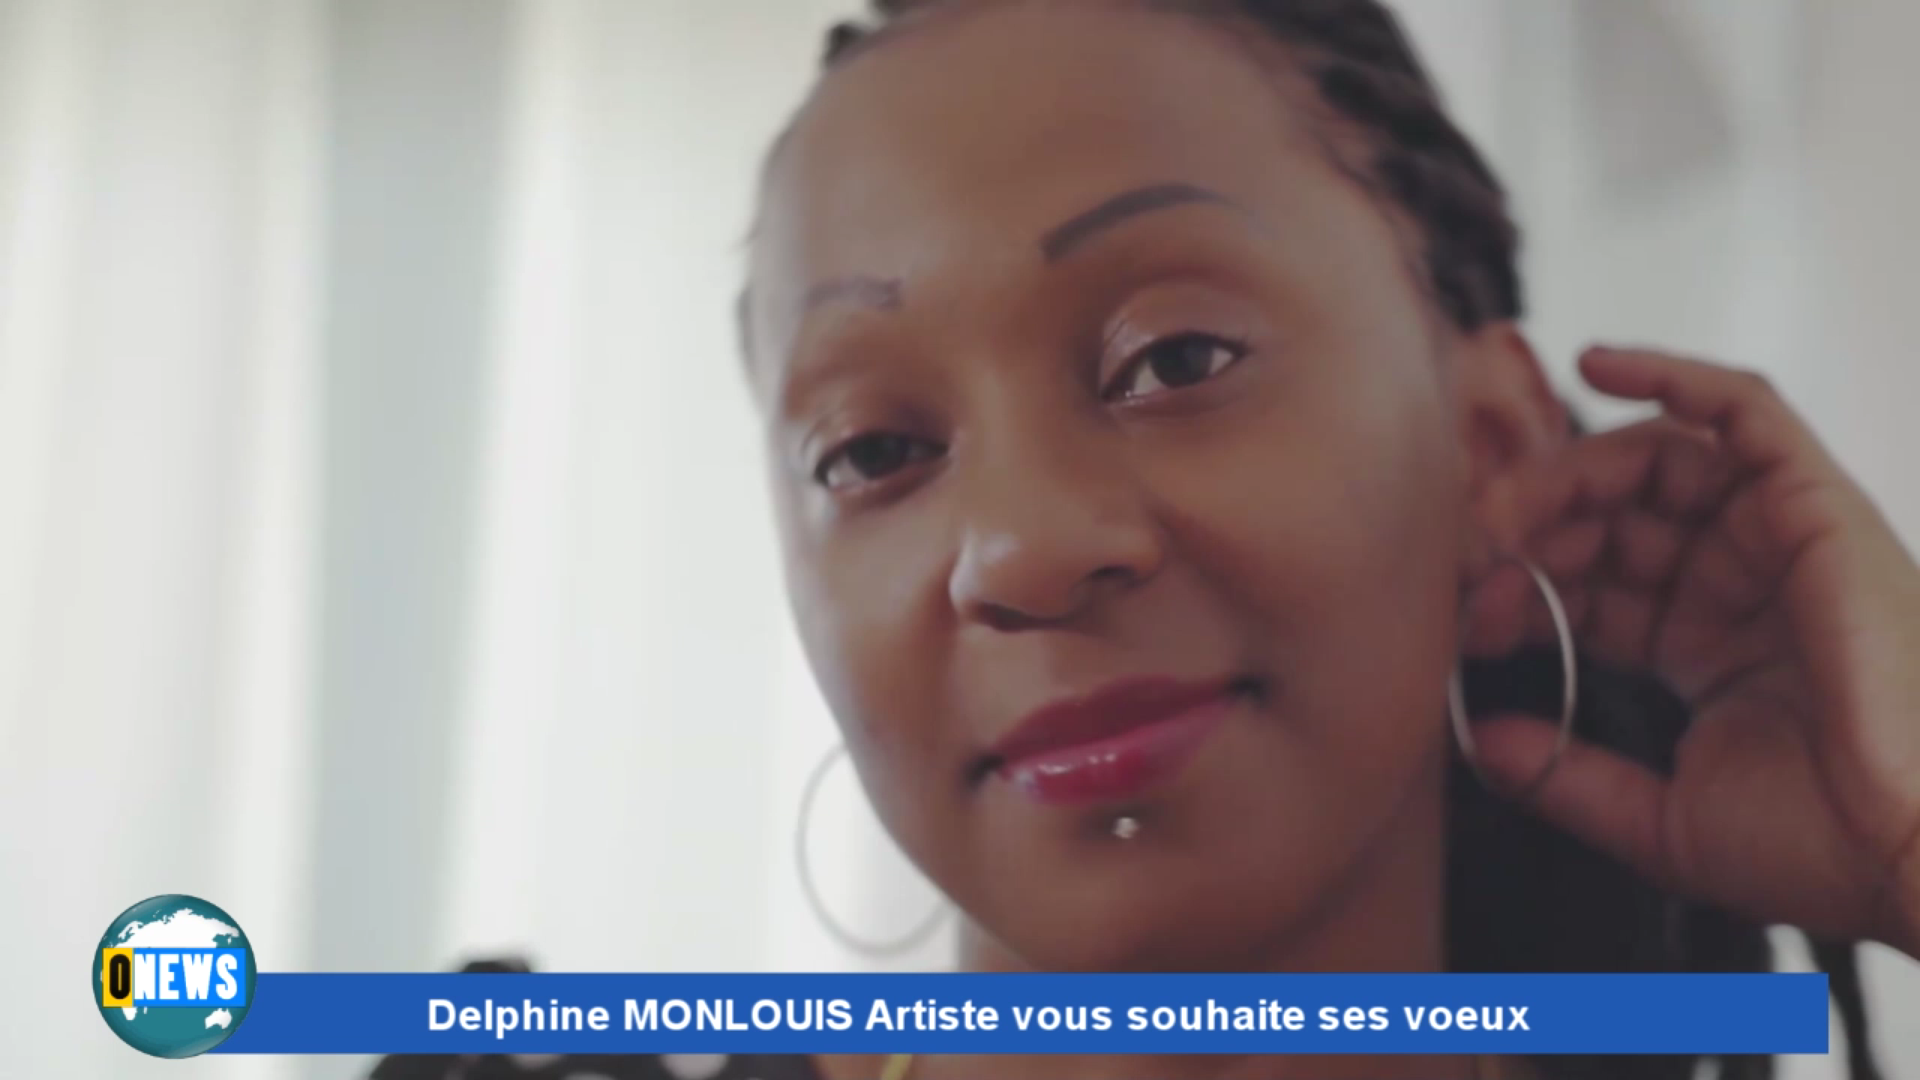 [Vidéo] Onews Spécial voeux. Les Voeux de Delphine MONLOUIS Artiste